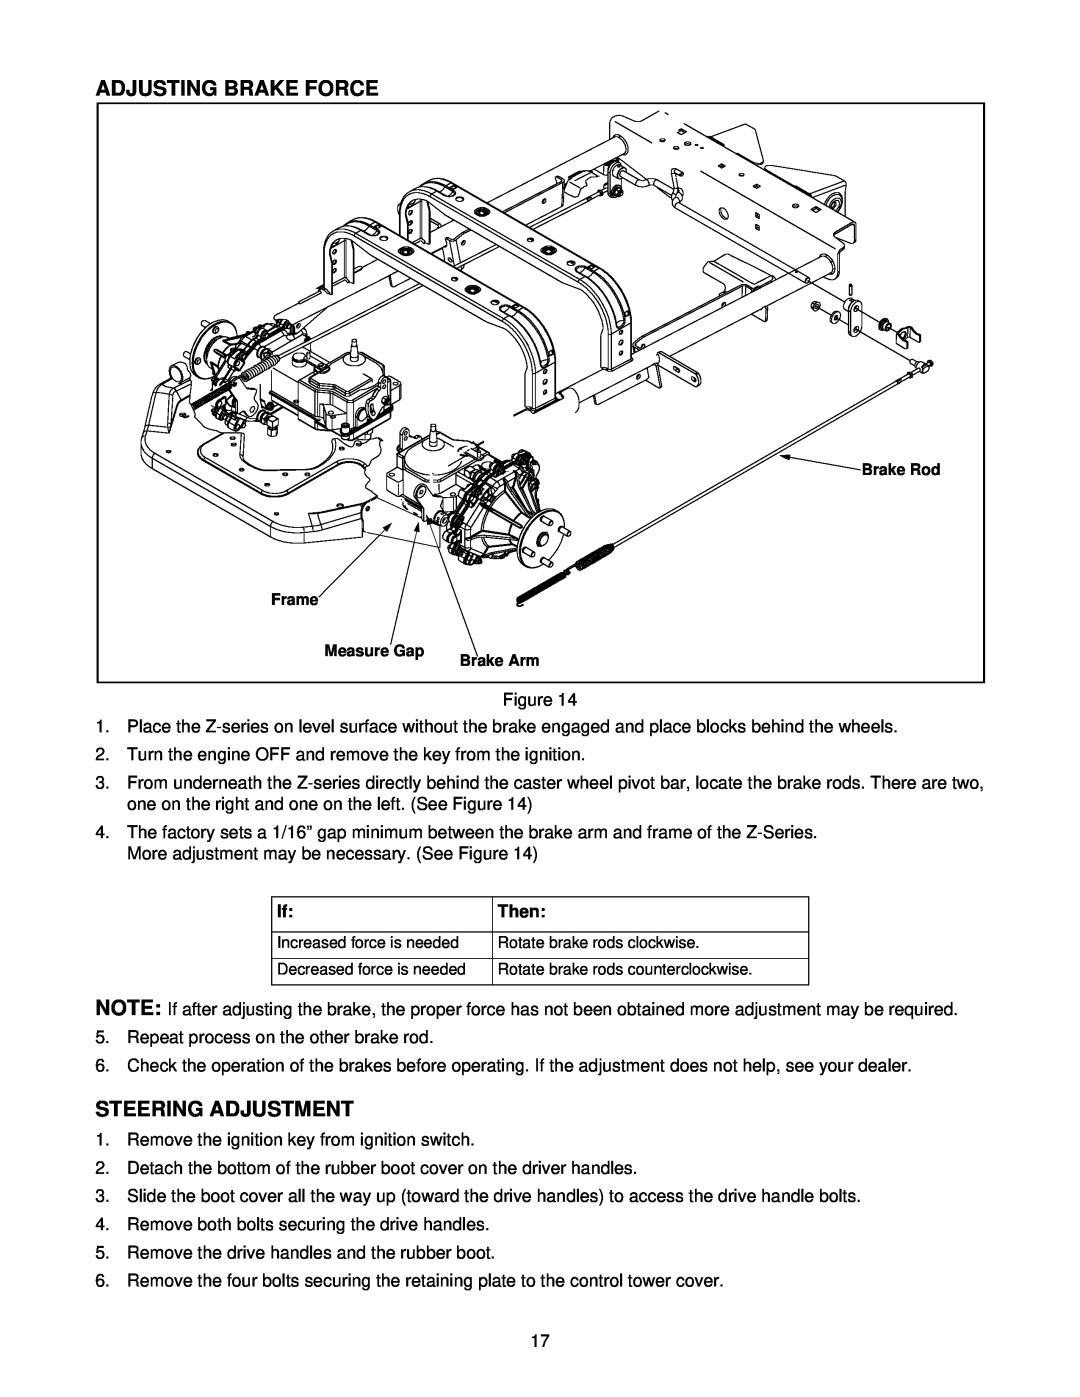 White Outdoor Z-185L, Z-205, Z-225 manual Adjusting Brake Force, Steering Adjustment, Then 